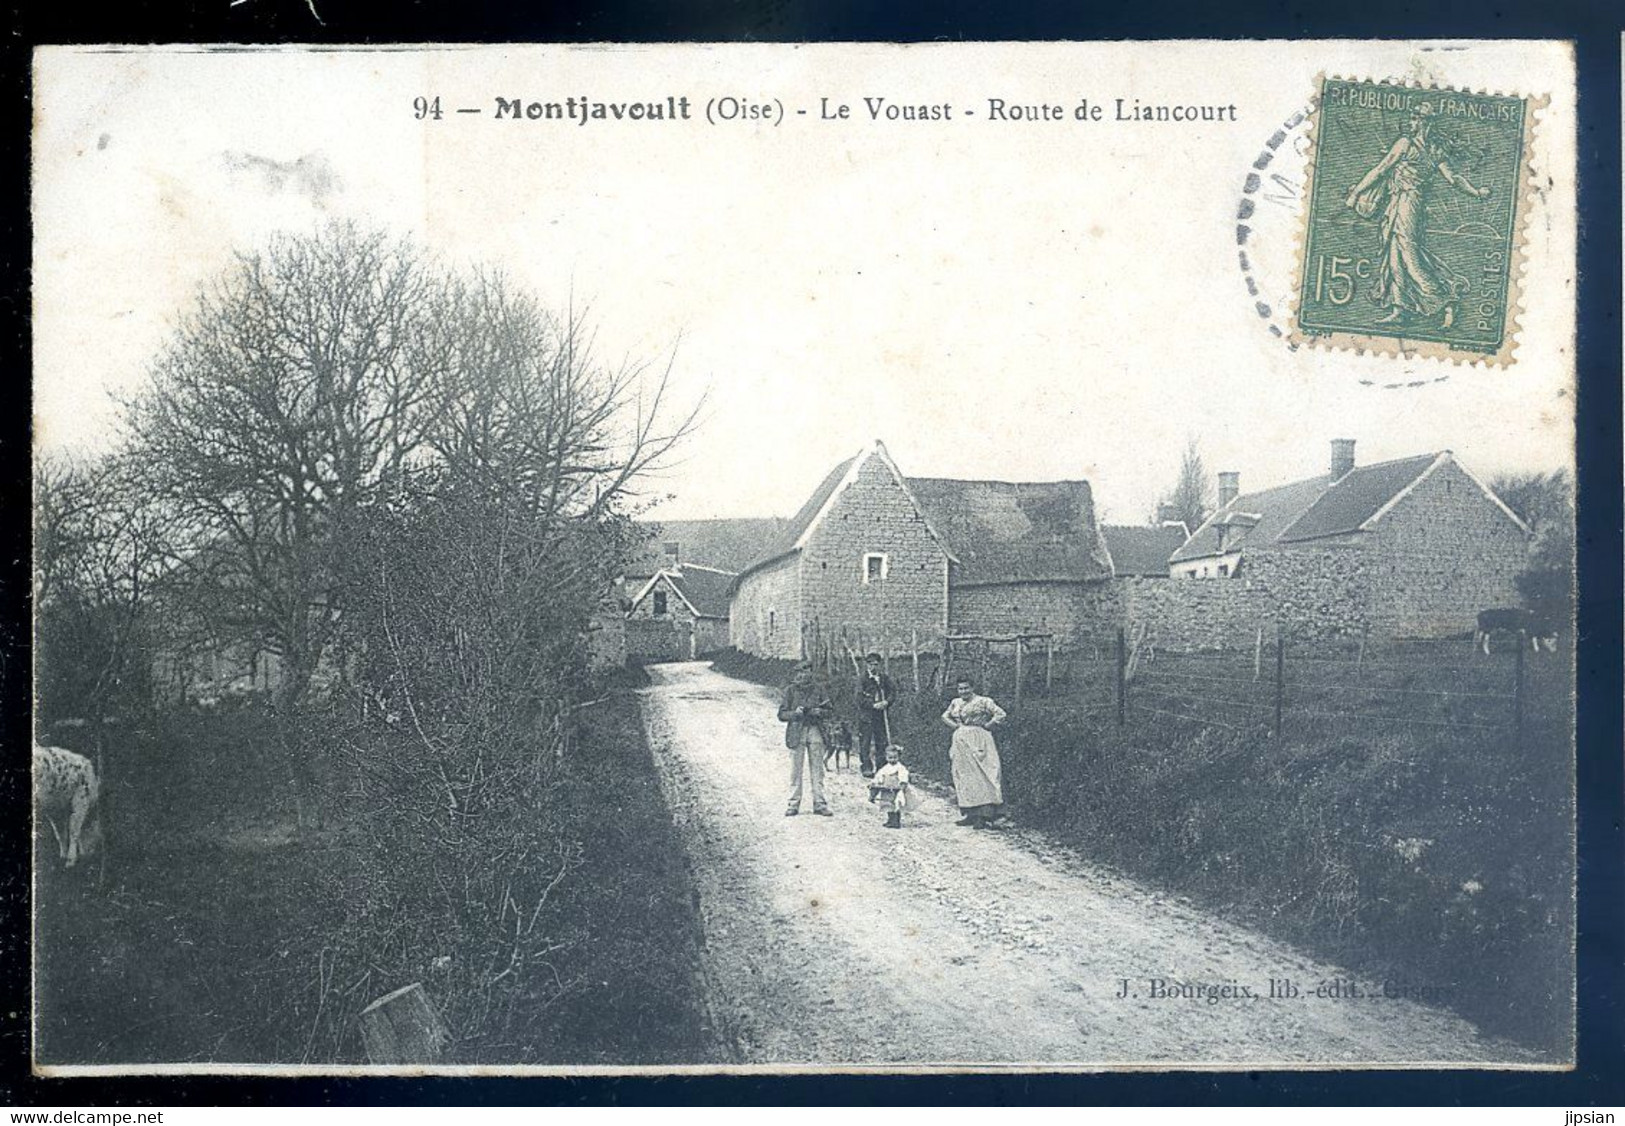 Cpa Du 60 Montjavoult - Le Vouast -  Route De Liancourt  AVR20-13 - Montjavoult